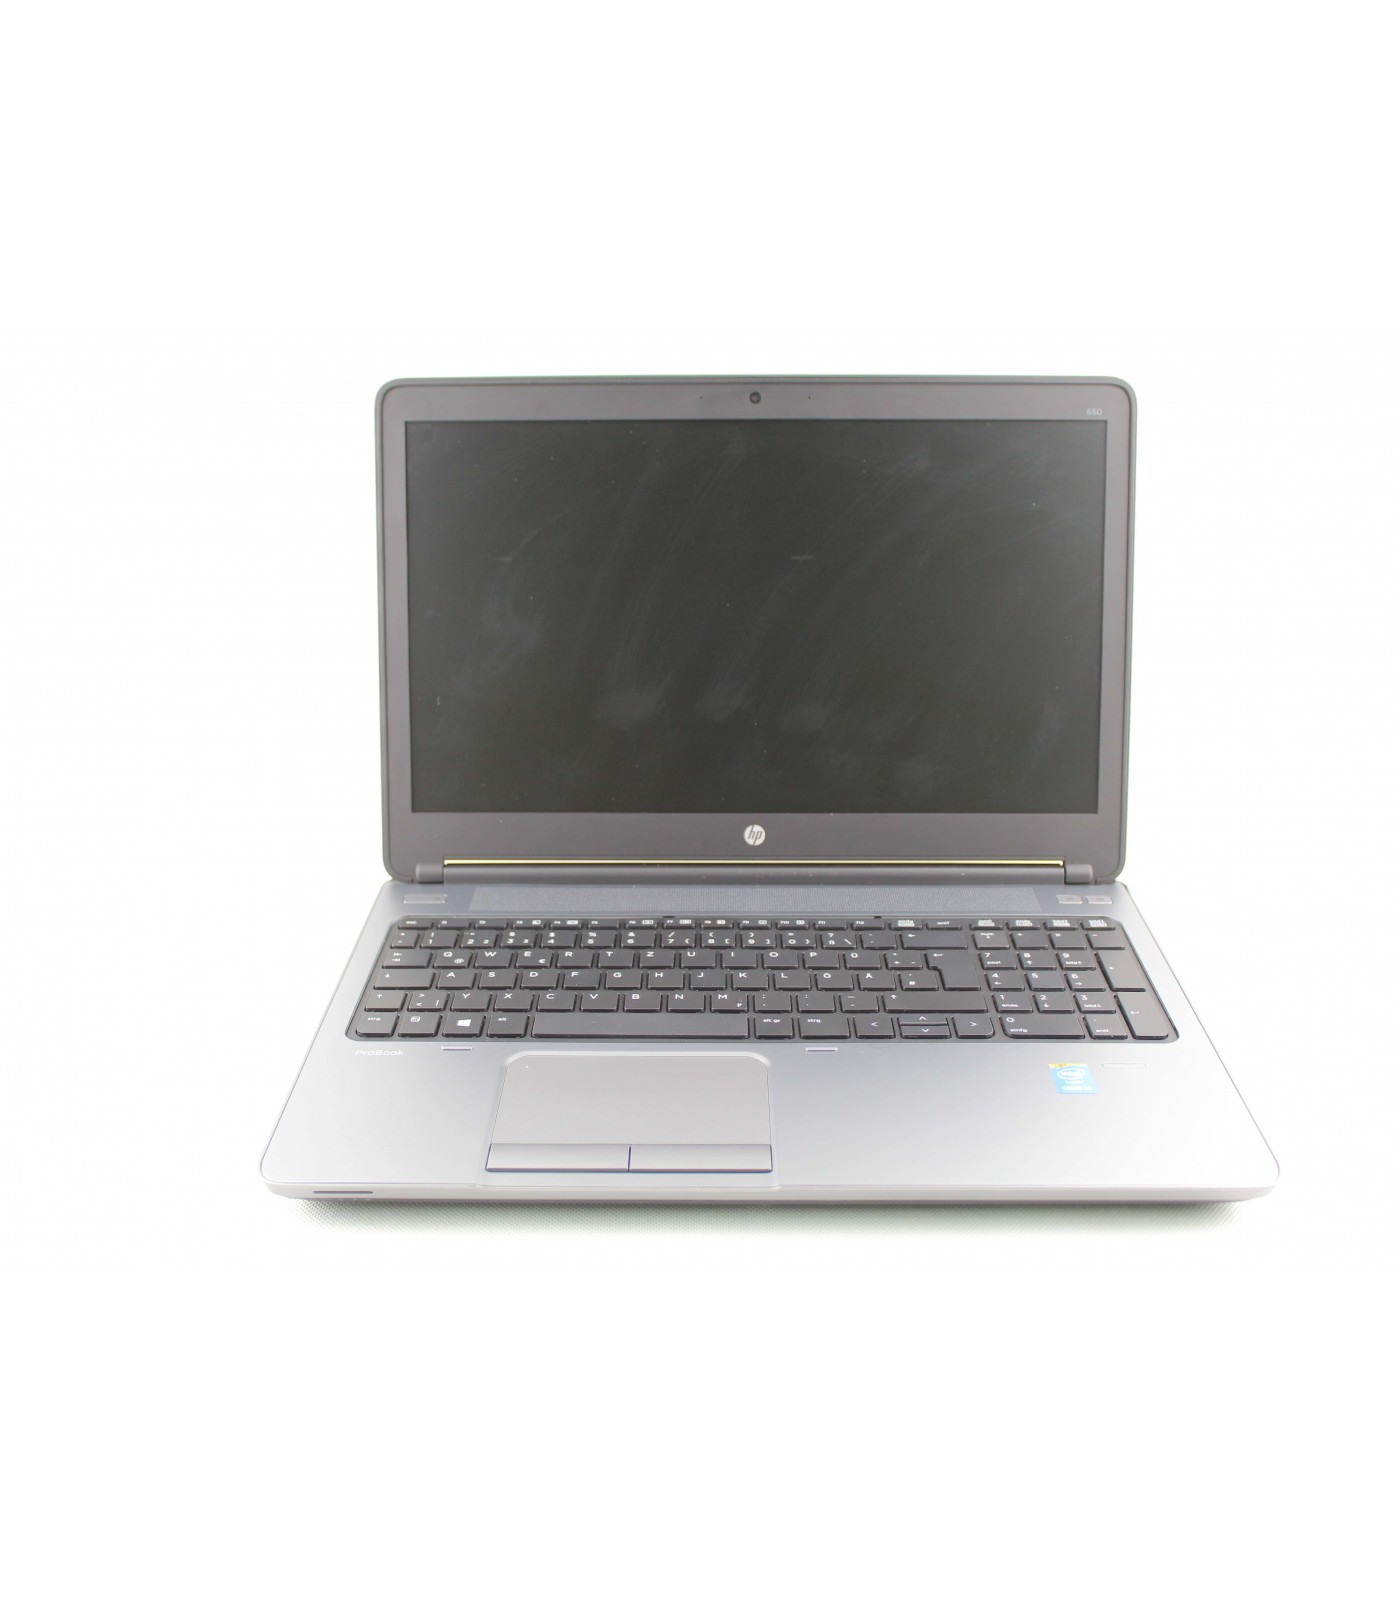 Poleasingowy laptop HP ProBook 650 G1 z Intel Core i3-4000M w Klasie B.